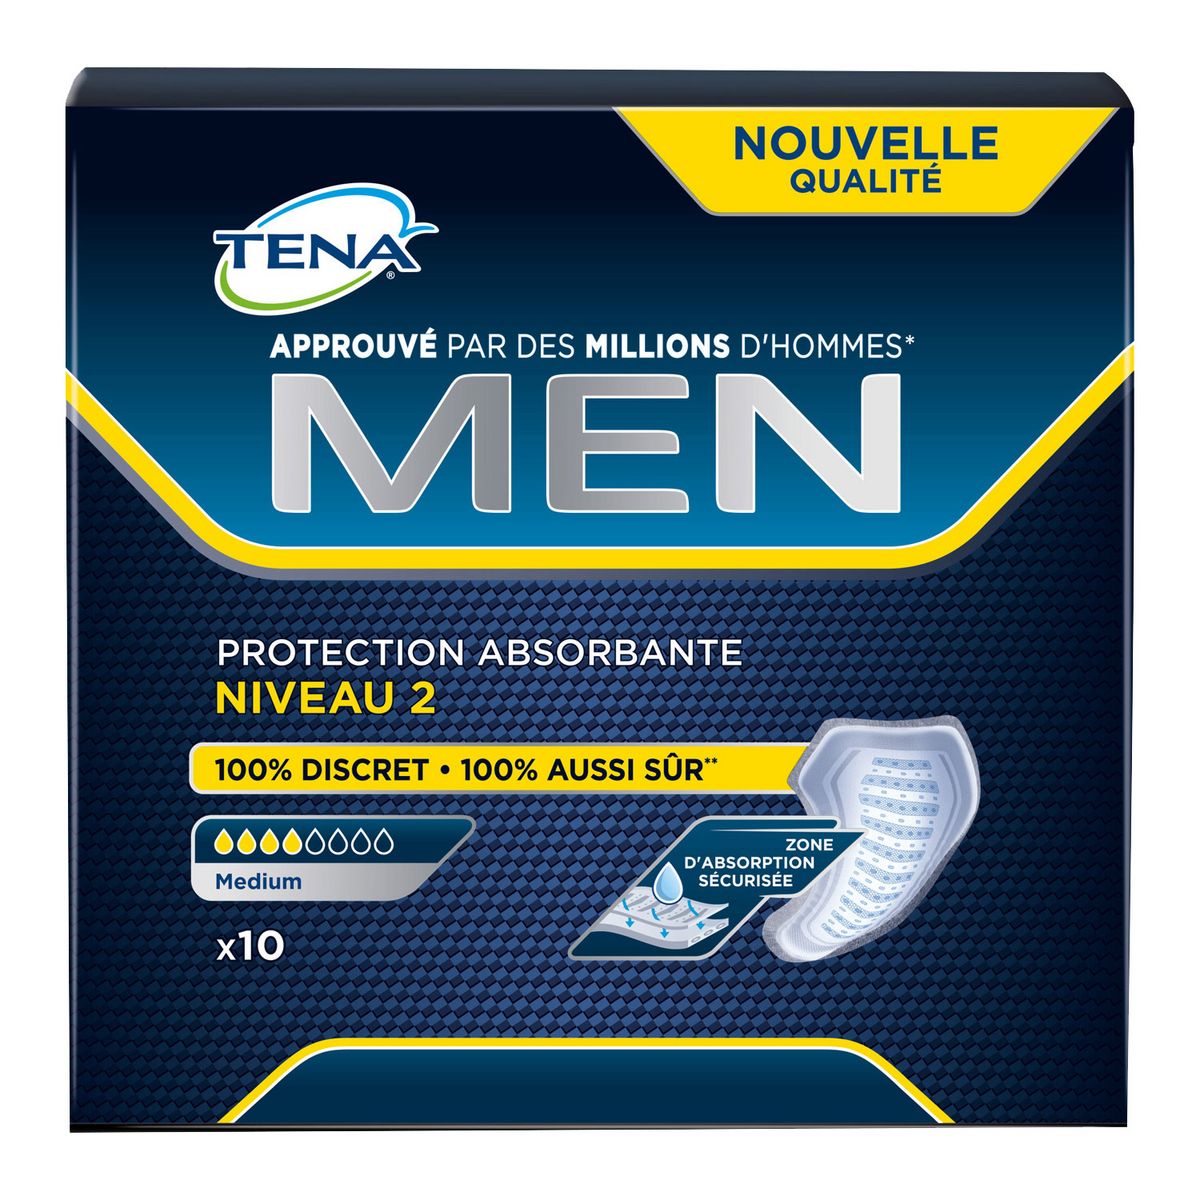 TENA MEN Protection absorbante pour homme medium niveau 2 10 protections